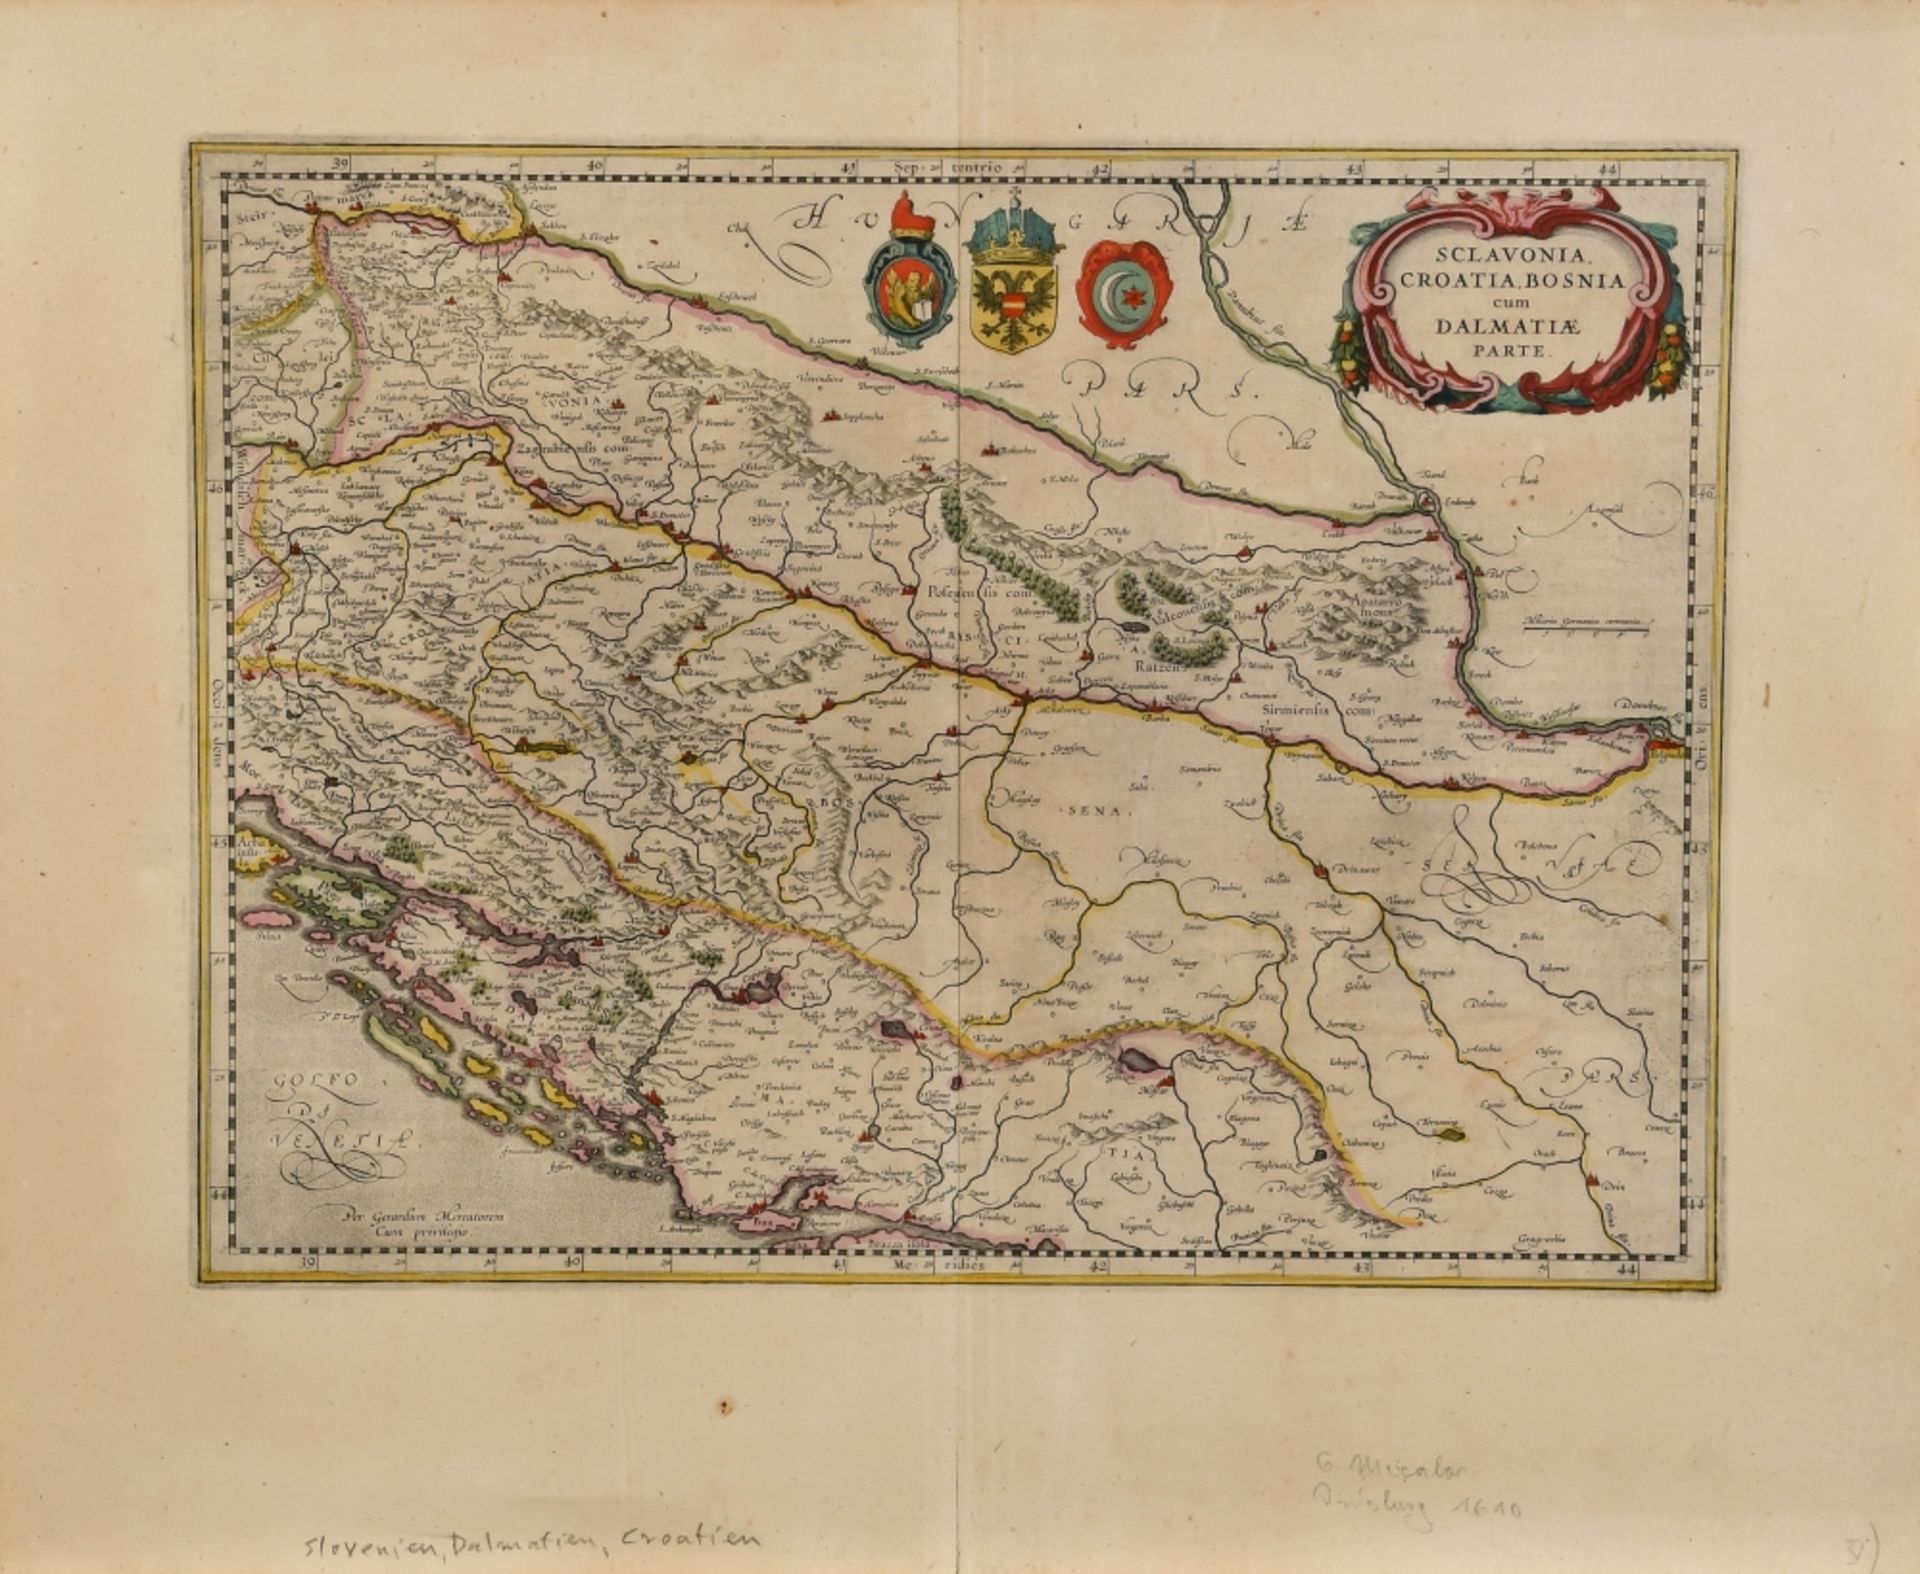 Landkarte "Sclavonia, Croatia, Bosnia"